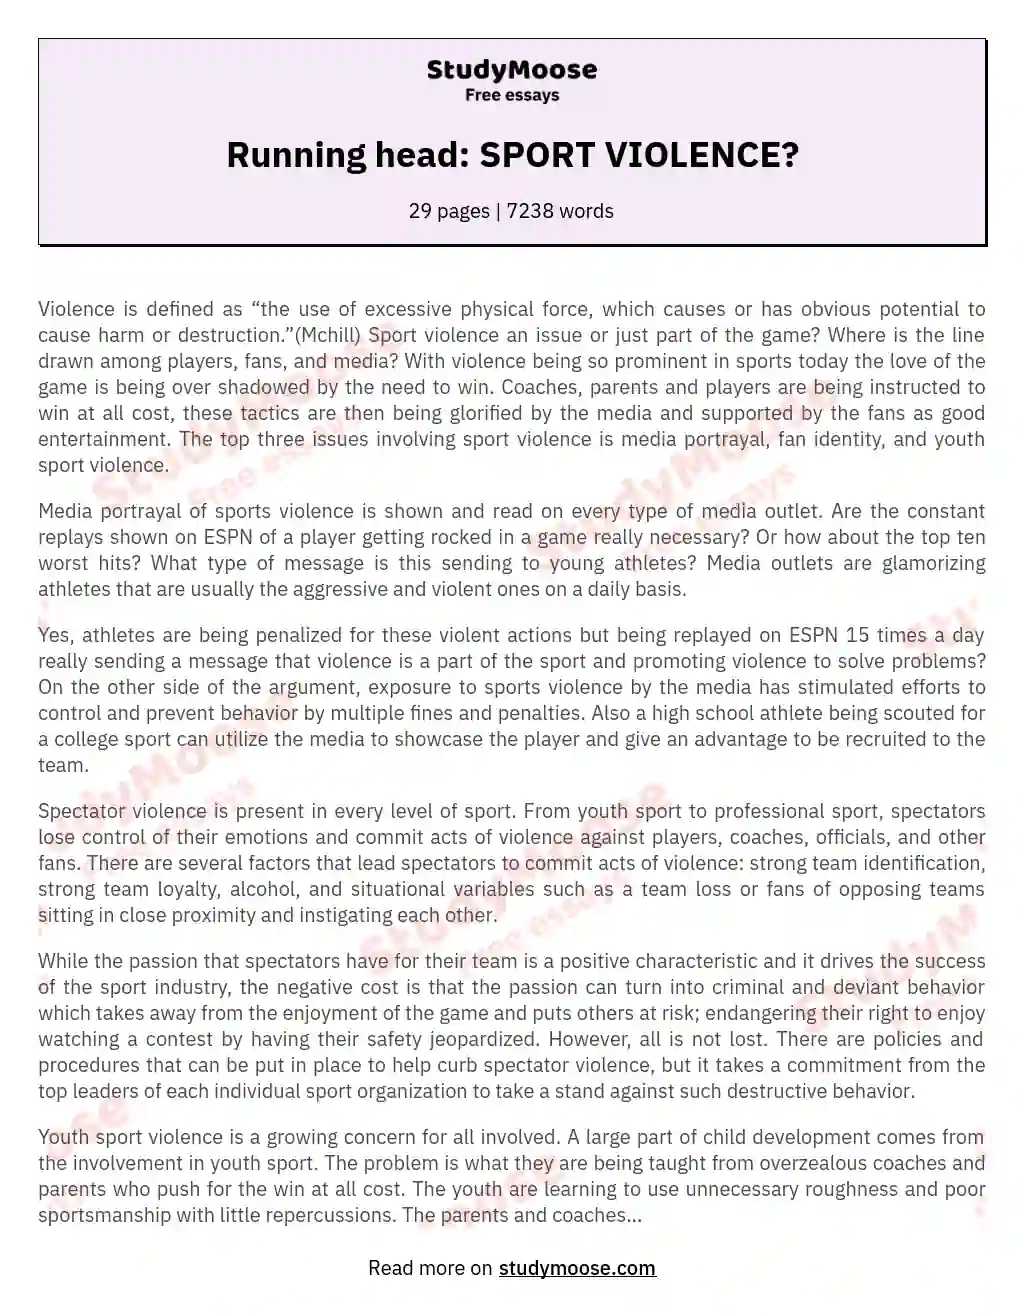 Running head: SPORT VIOLENCE? essay